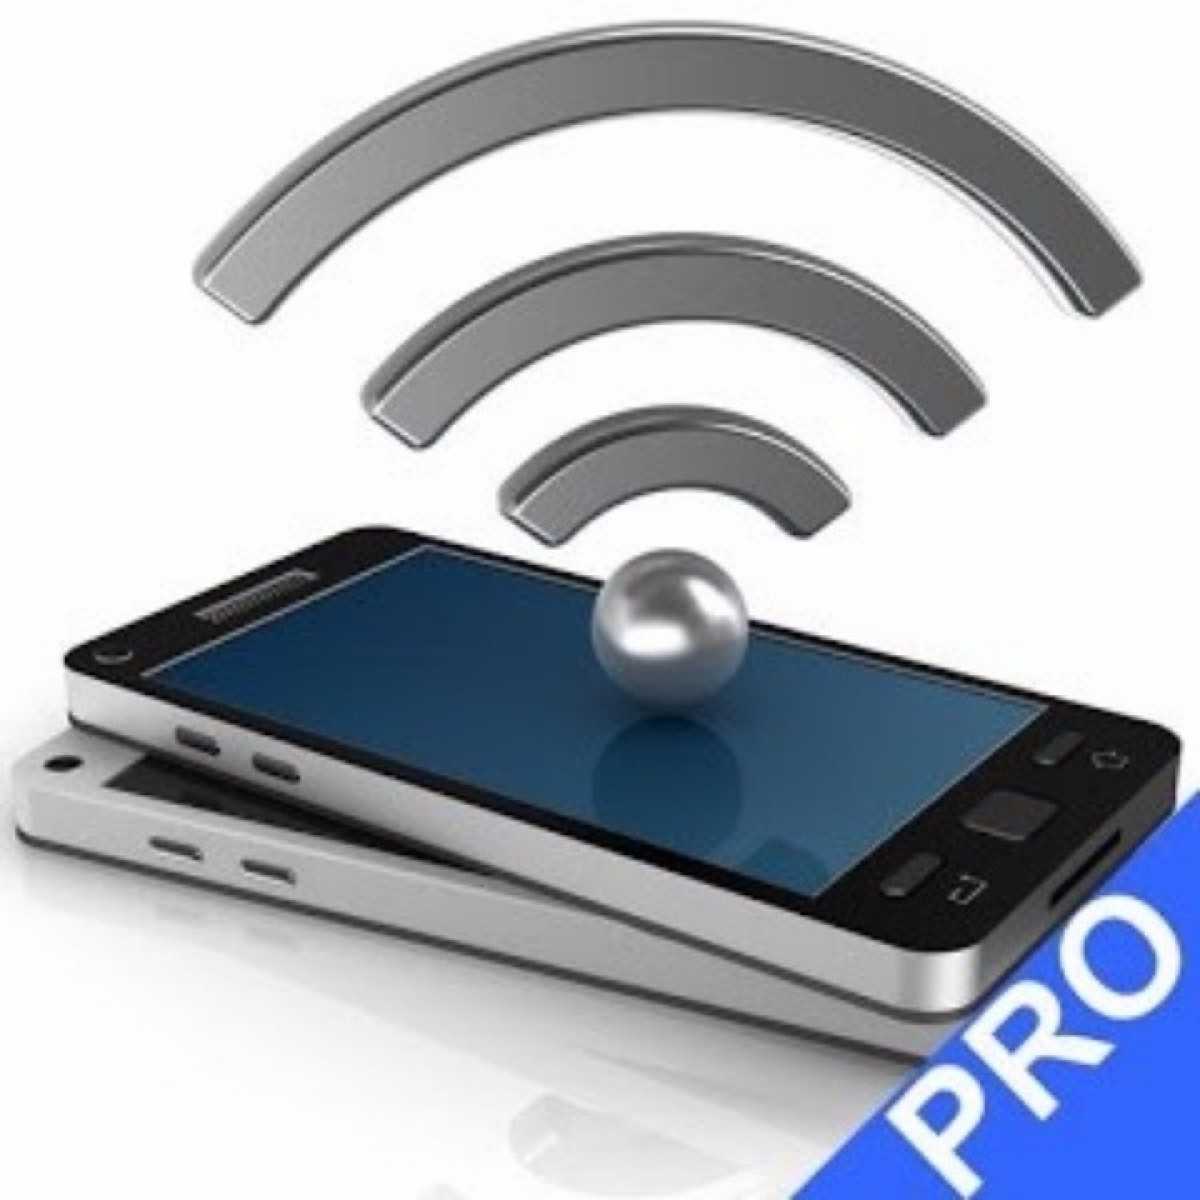 WiFi Speed Test Pro v4.1.1 (Paid) Apk